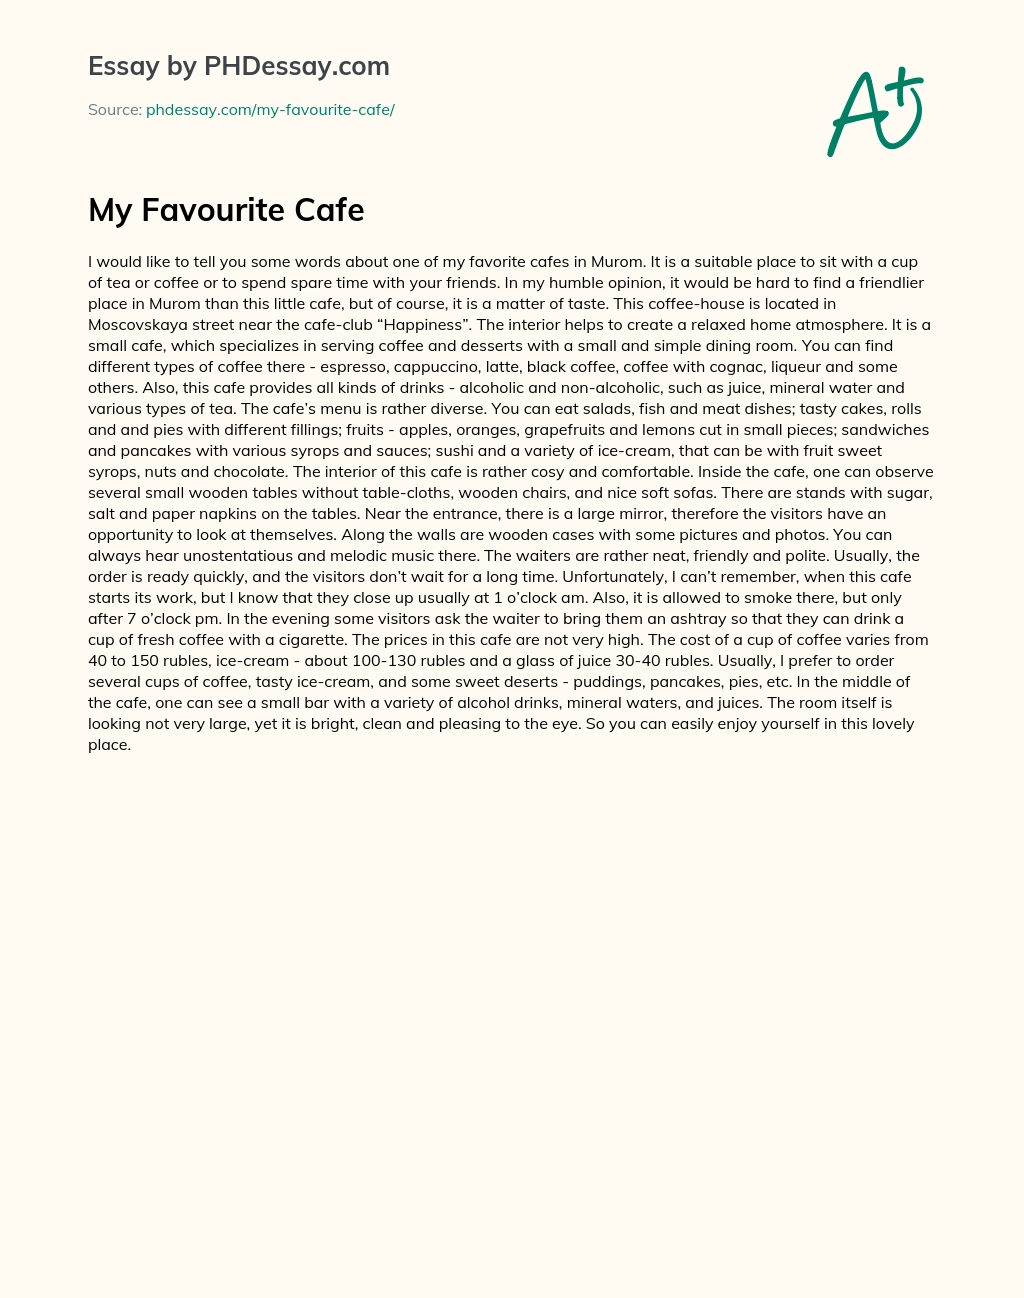 Cafe review essay